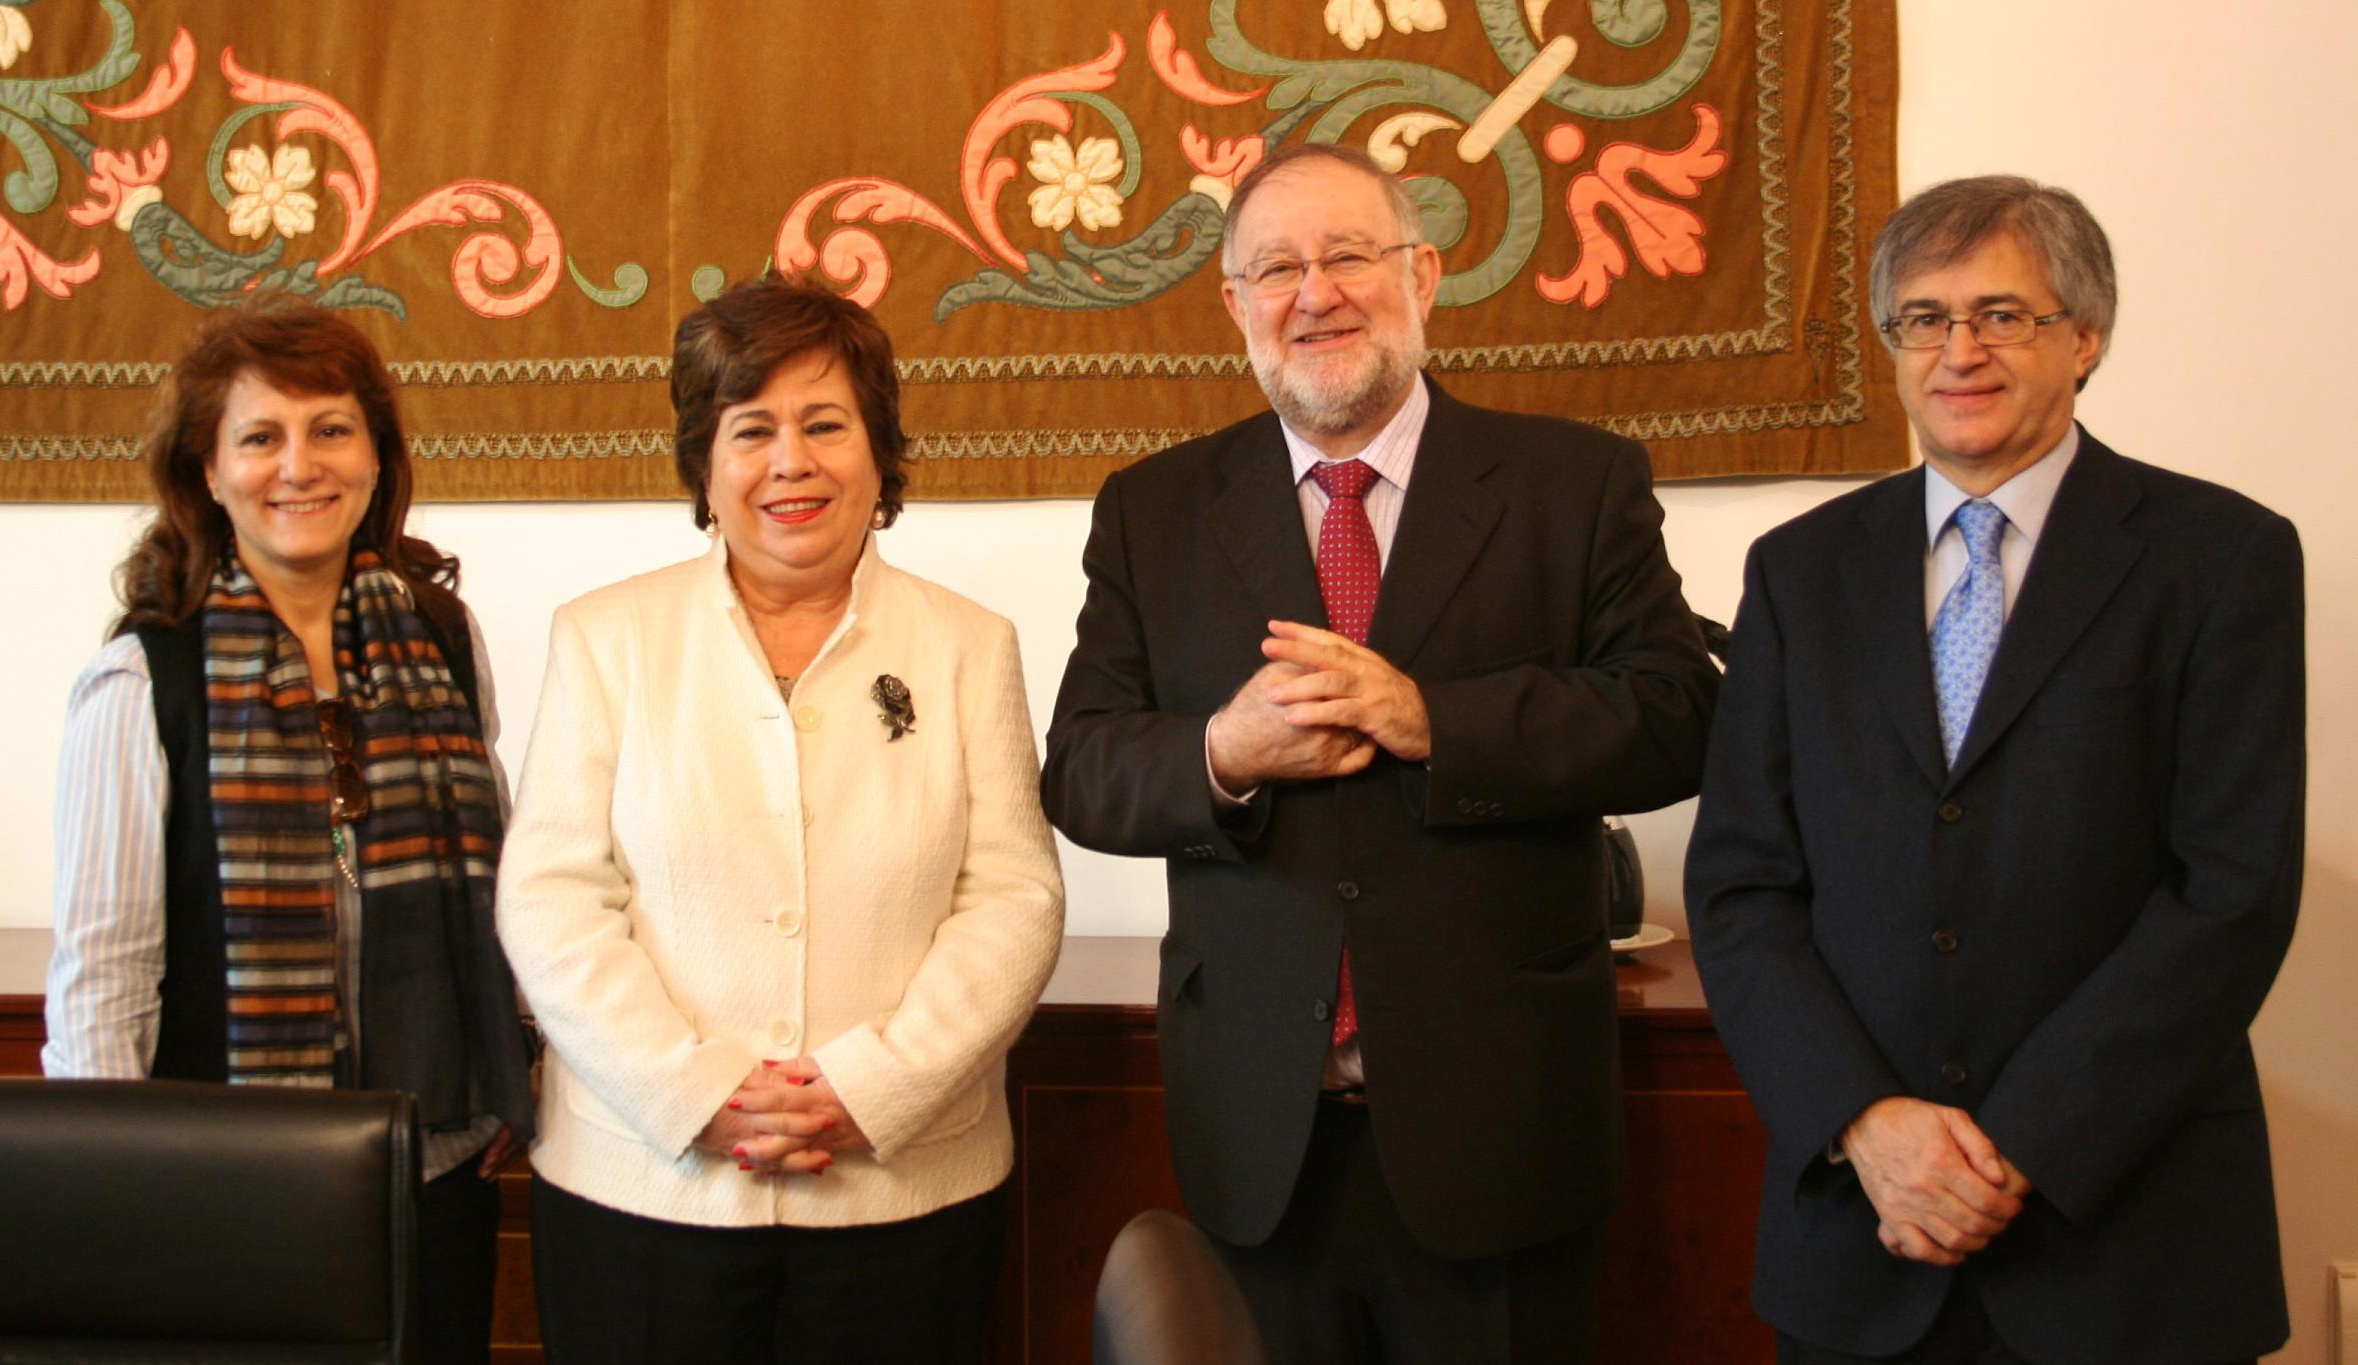 De izquierda a derecha: Elsa González, María Luisa Cava de Llano, Fernando González Urbaneja y Nemesio Rodríguez. Foto: Defensor del Pueblo.